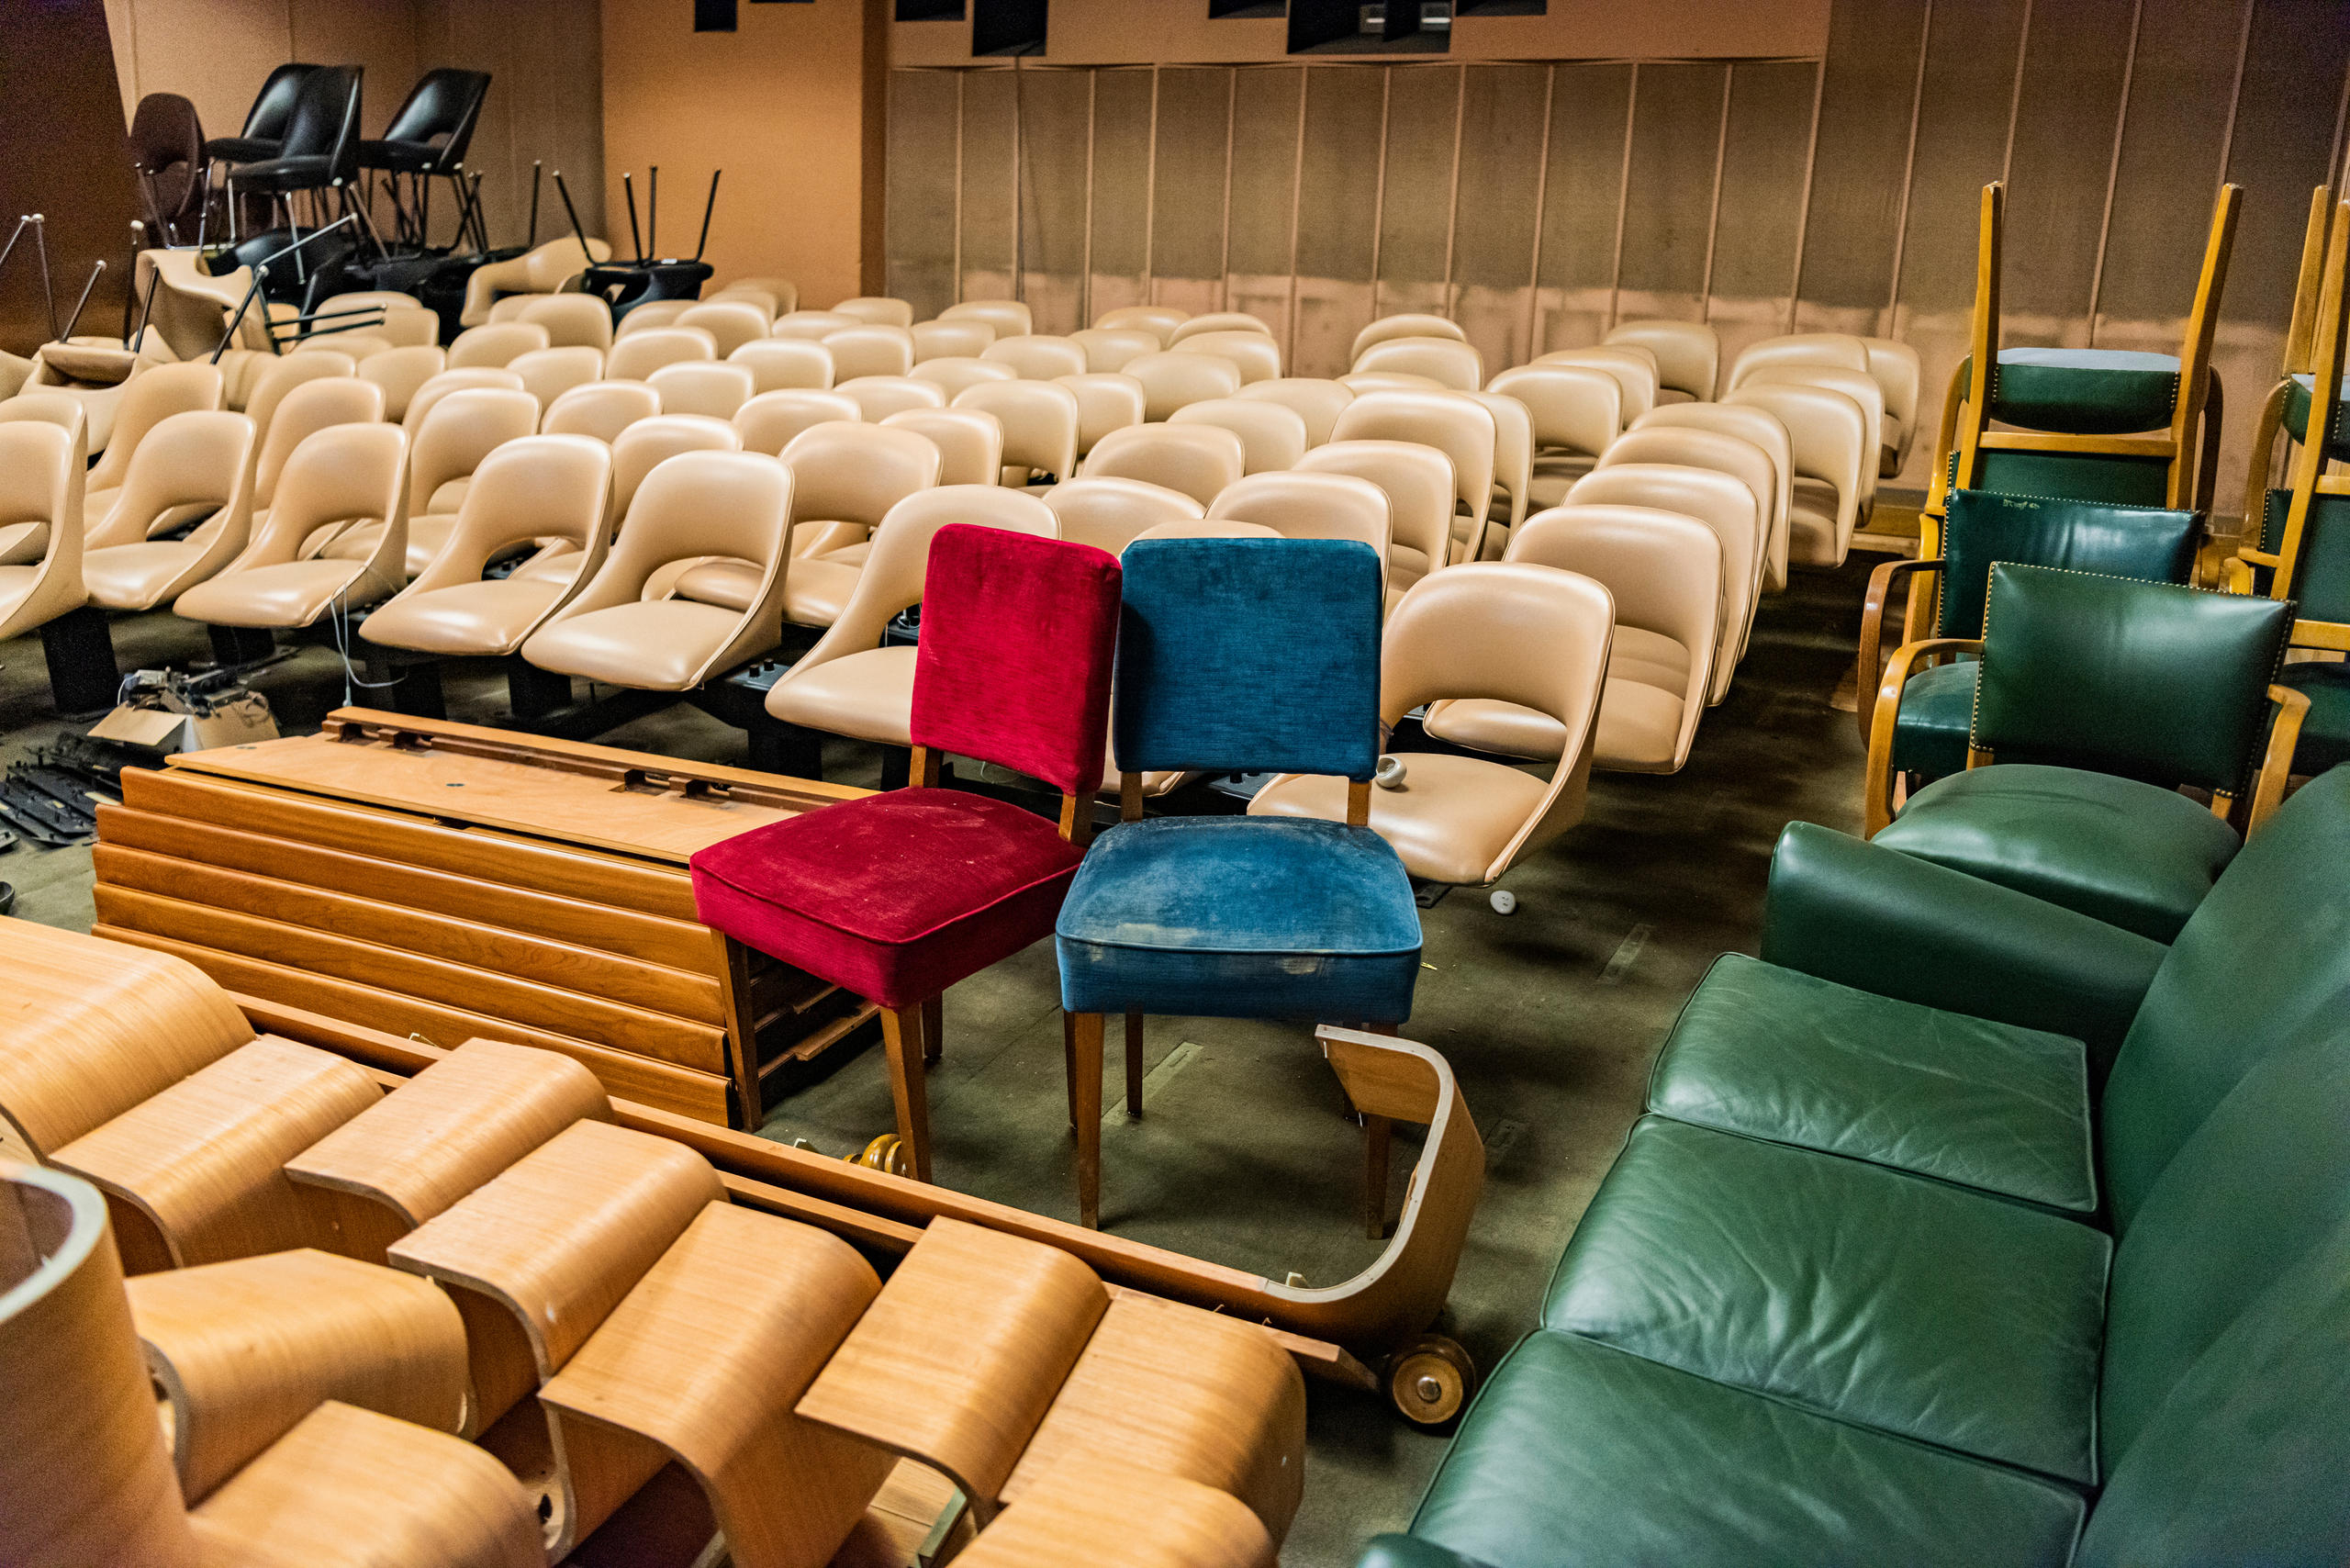 Eine bunte Mischung von Stühlen in einem ehemaligen Kinosaal